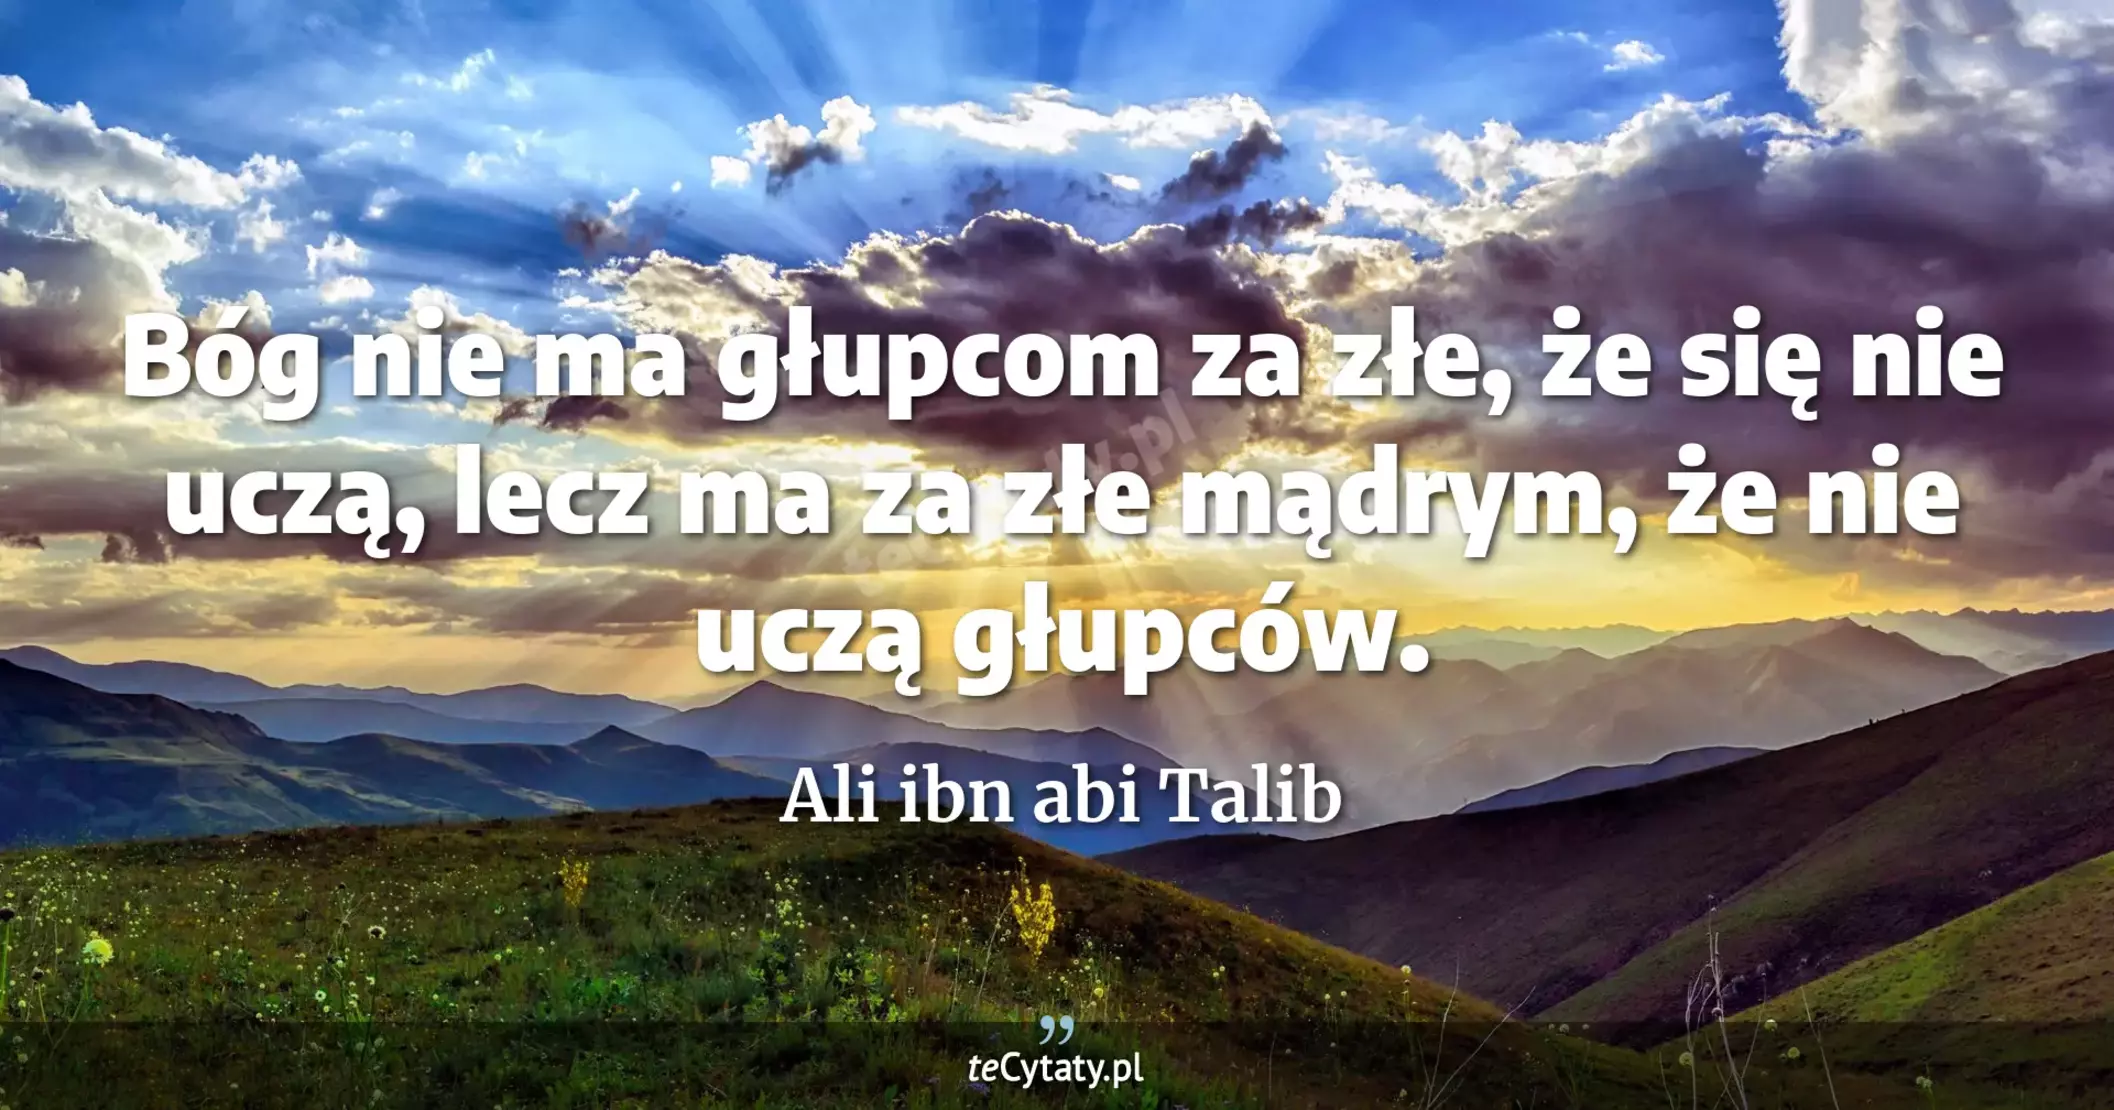 Bóg nie ma głupcom za złe, że się nie uczą, lecz ma za złe mądrym, że nie uczą głupców. - Ali ibn abi Talib